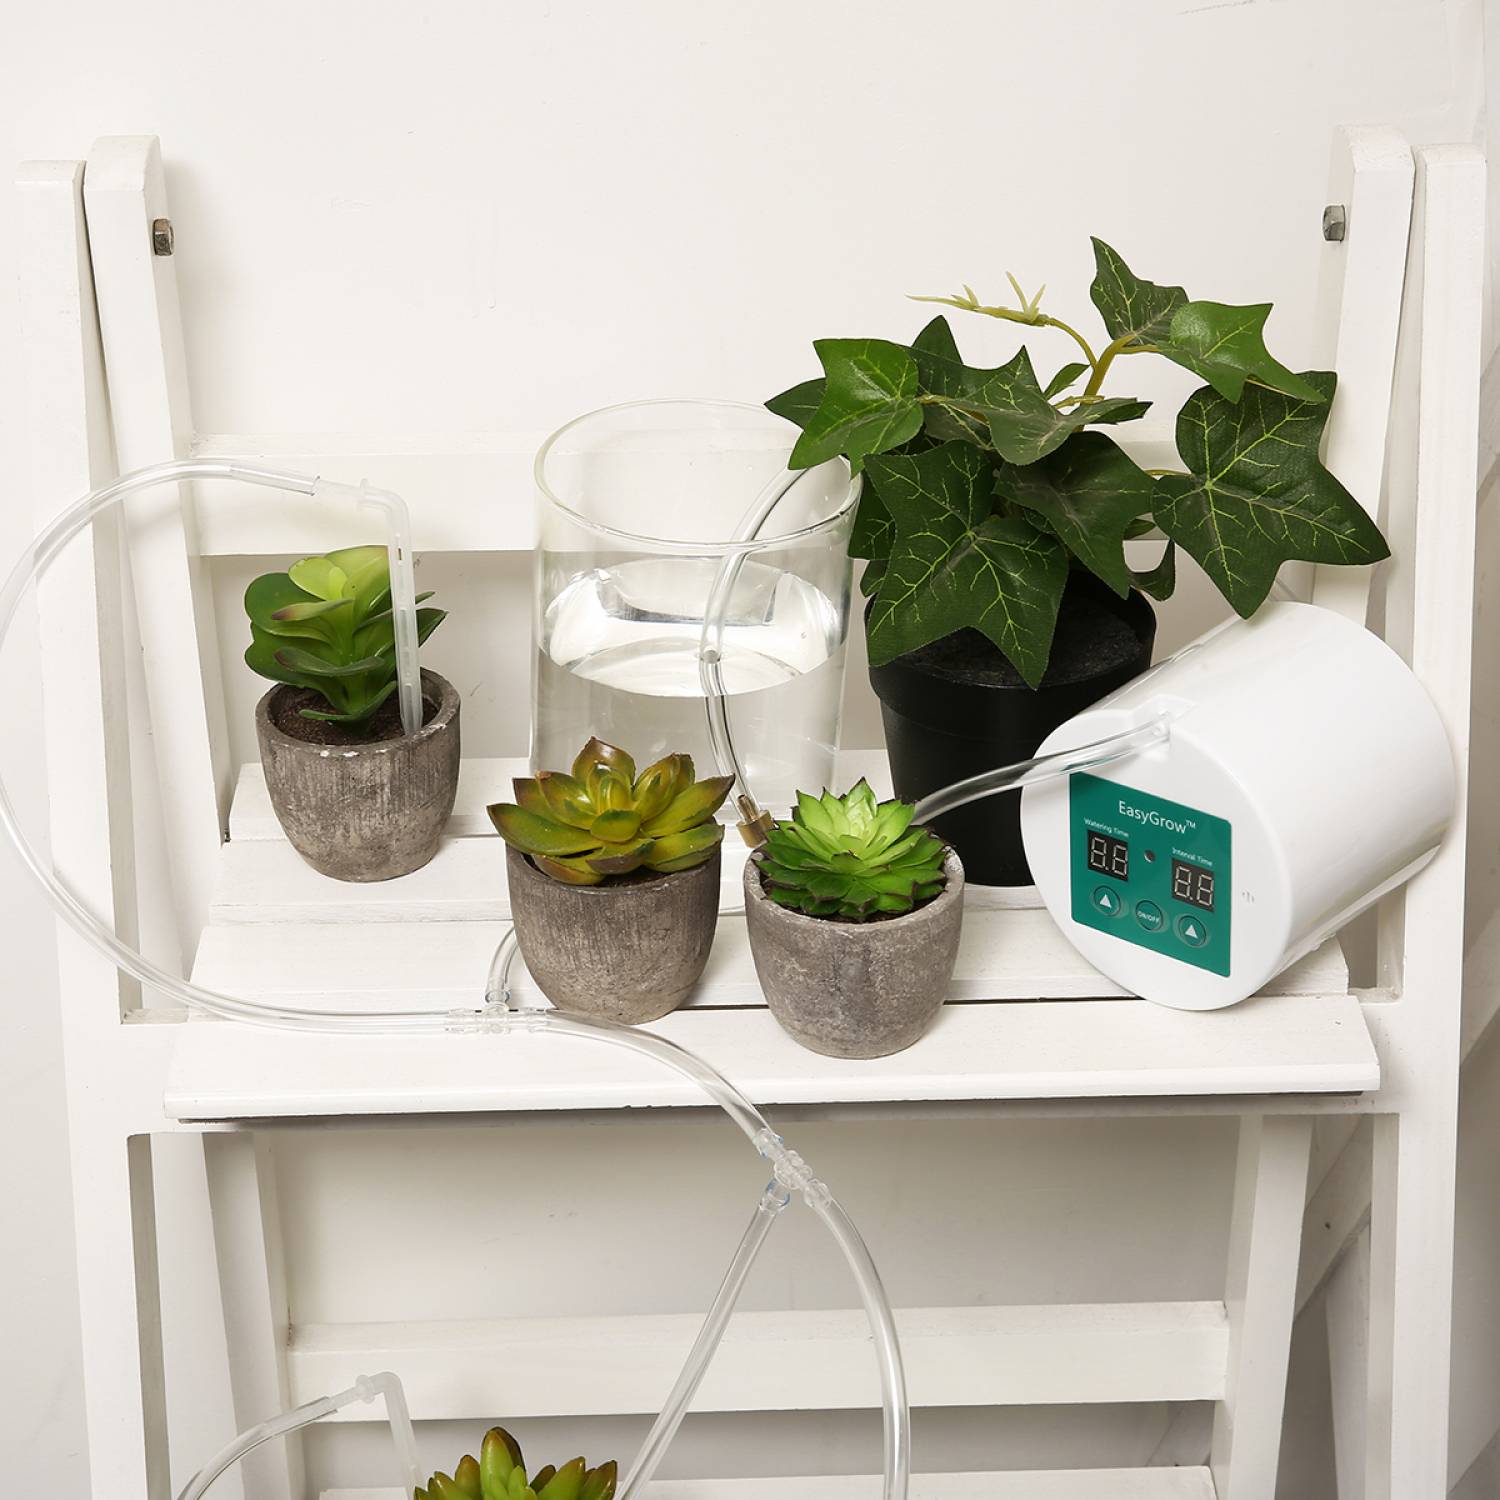 Набор для капельного полива домашних растений с таймером питание от батареек ААА или 220 вольт